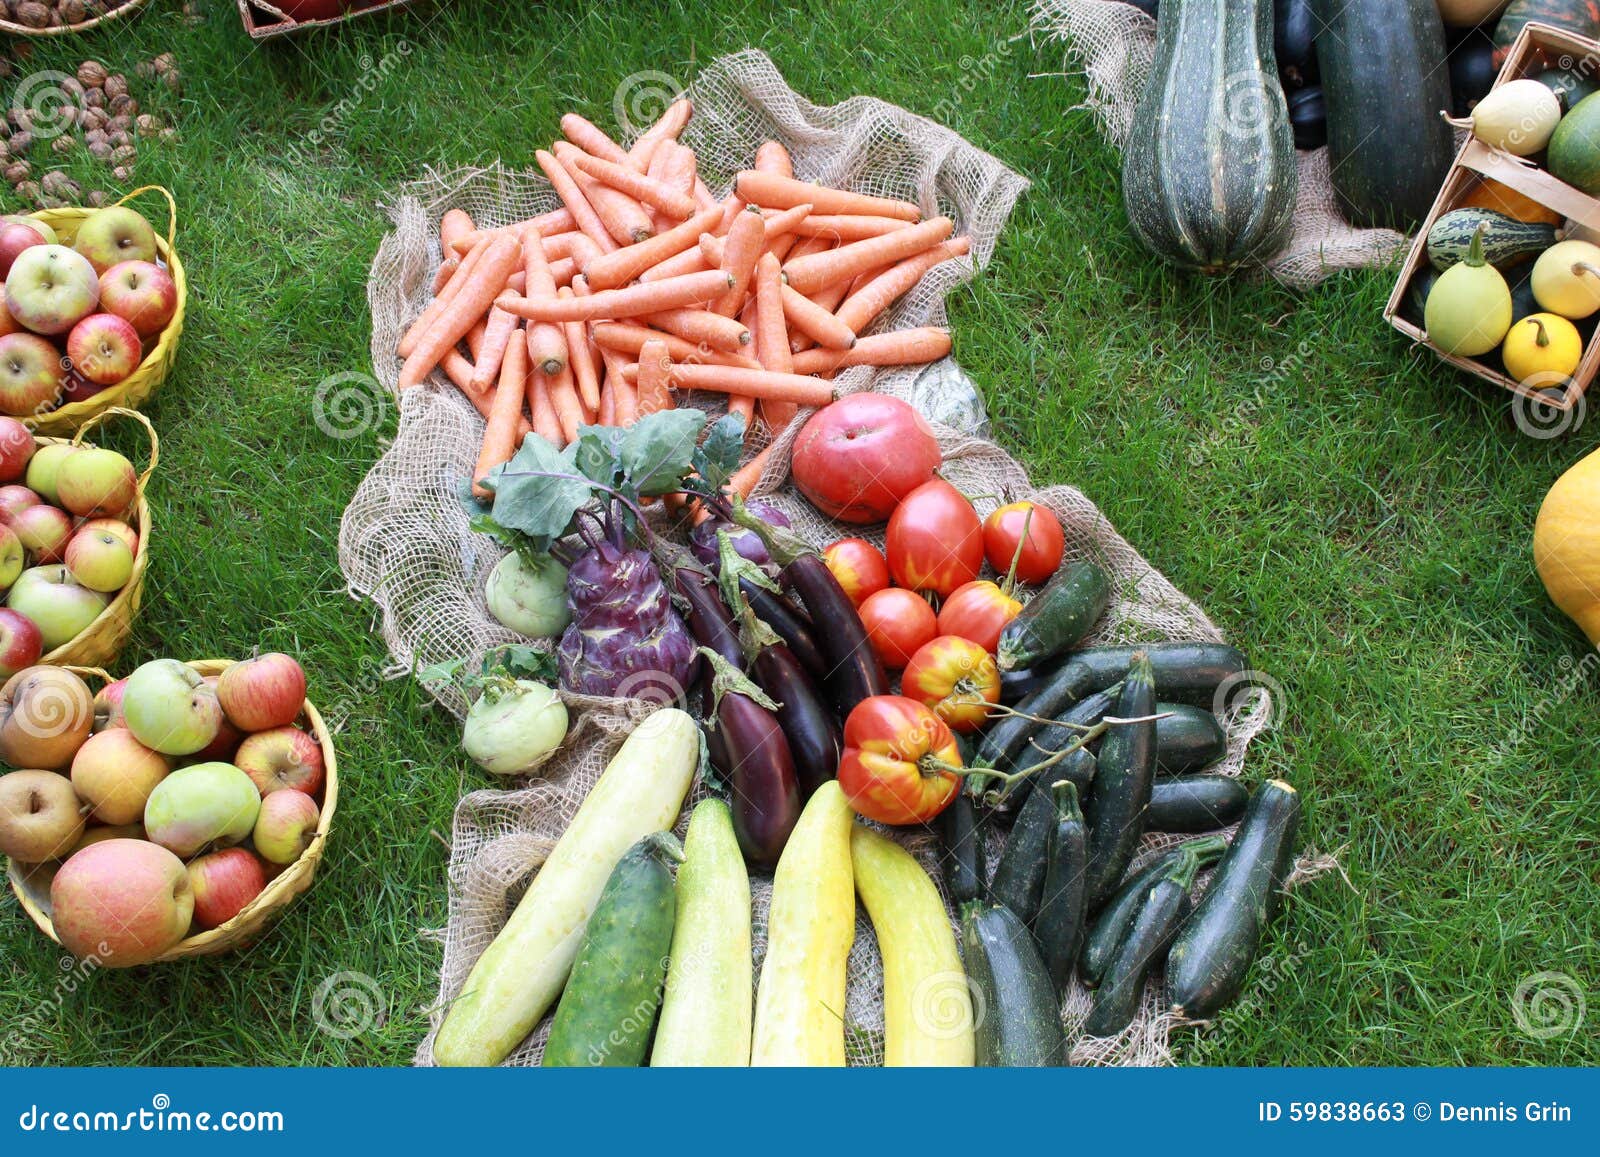 Molte verdure sane differenti in giardino su erba. Un giardino con una palla del fieno con le verdure impilate compreso: Zucche, insalata, mele, carote, cetrioli e molto